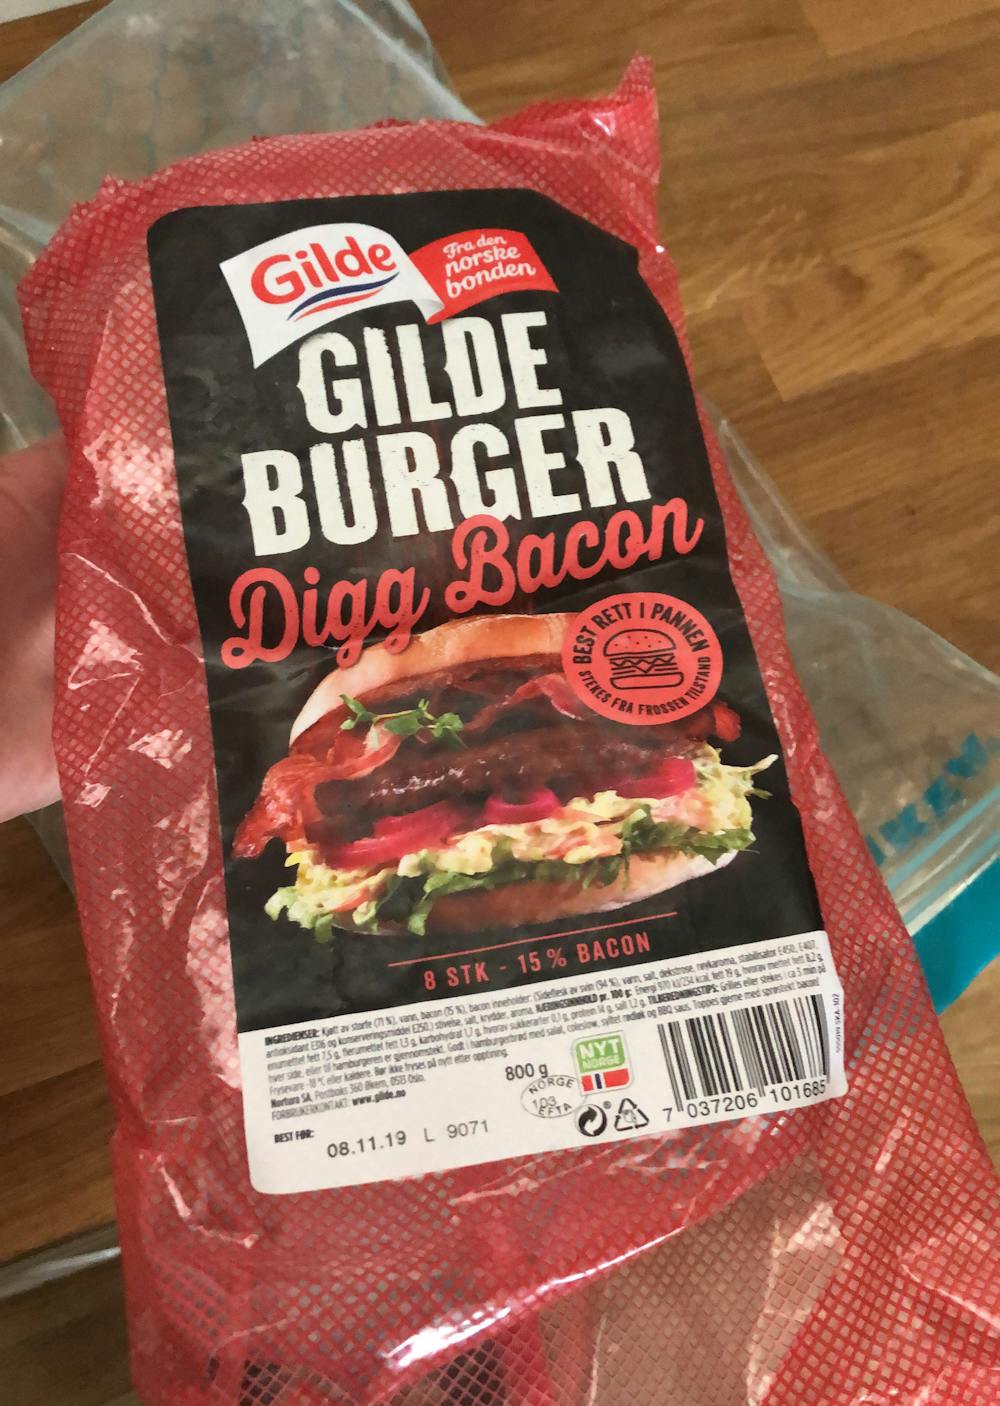 Gilde burger digg bacon, Gilde